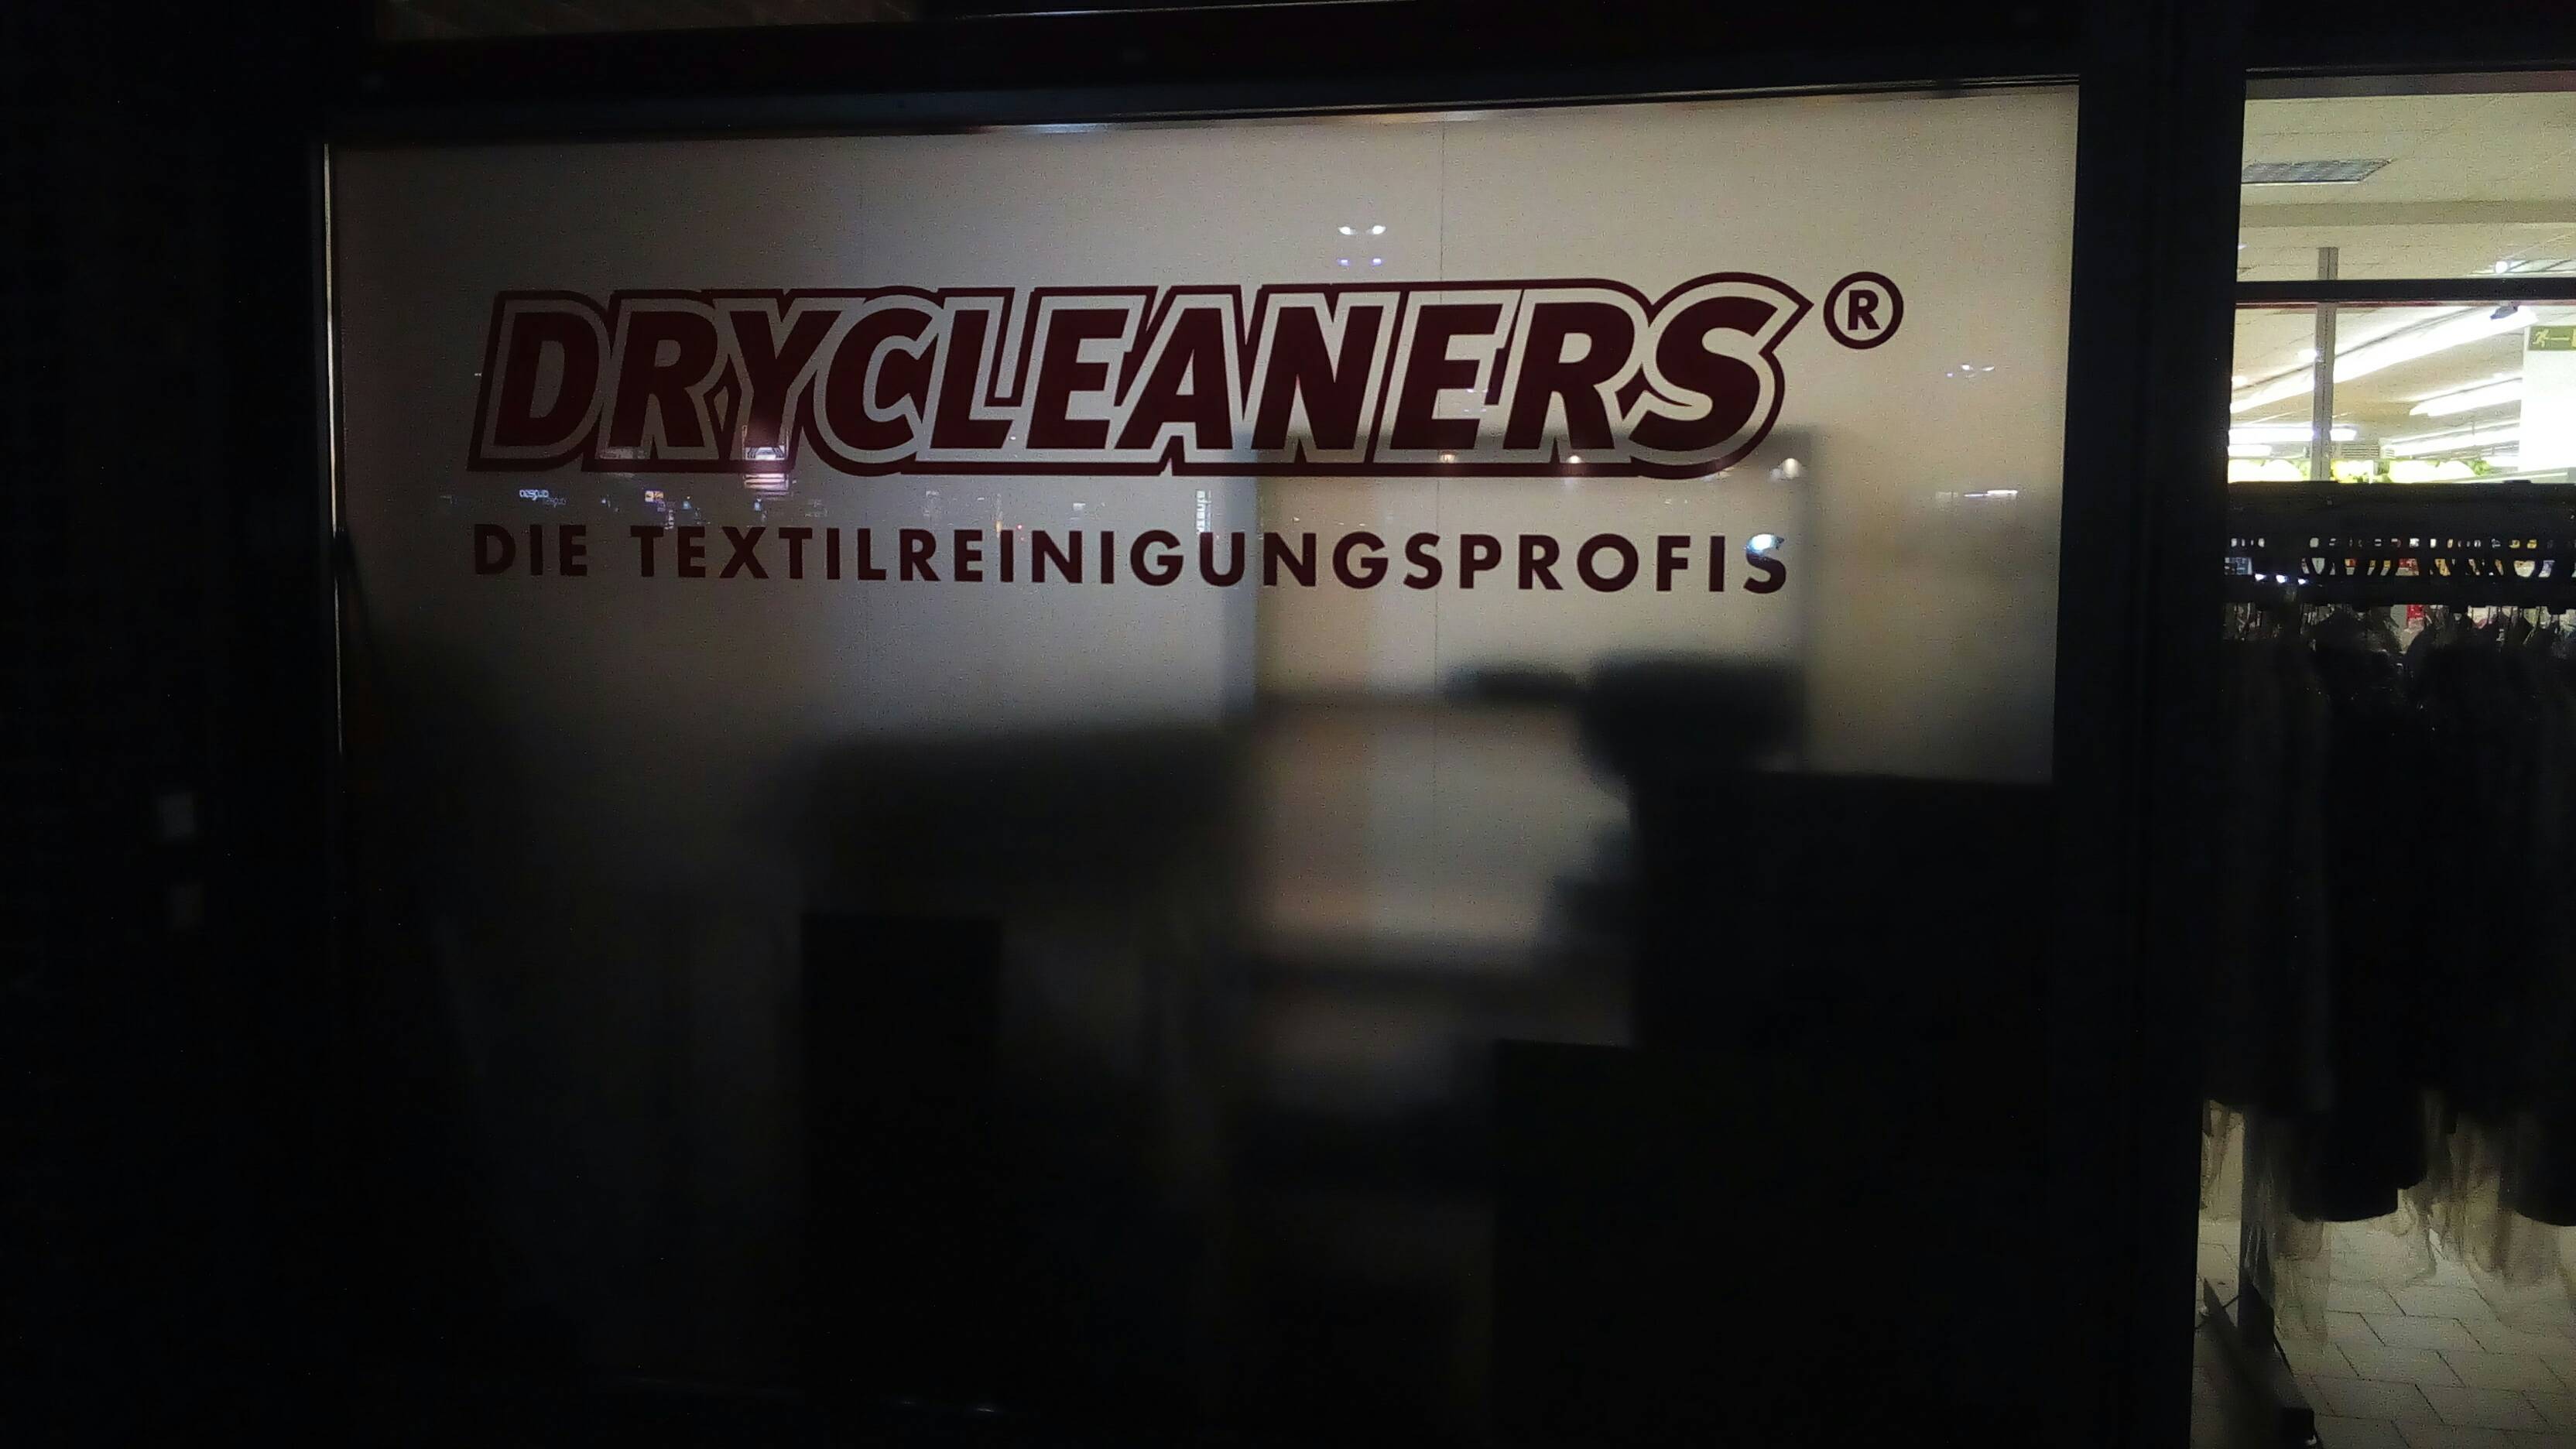 Bild 1 Drycleaners - Die Textilreinigungsprofis in Wuppertal